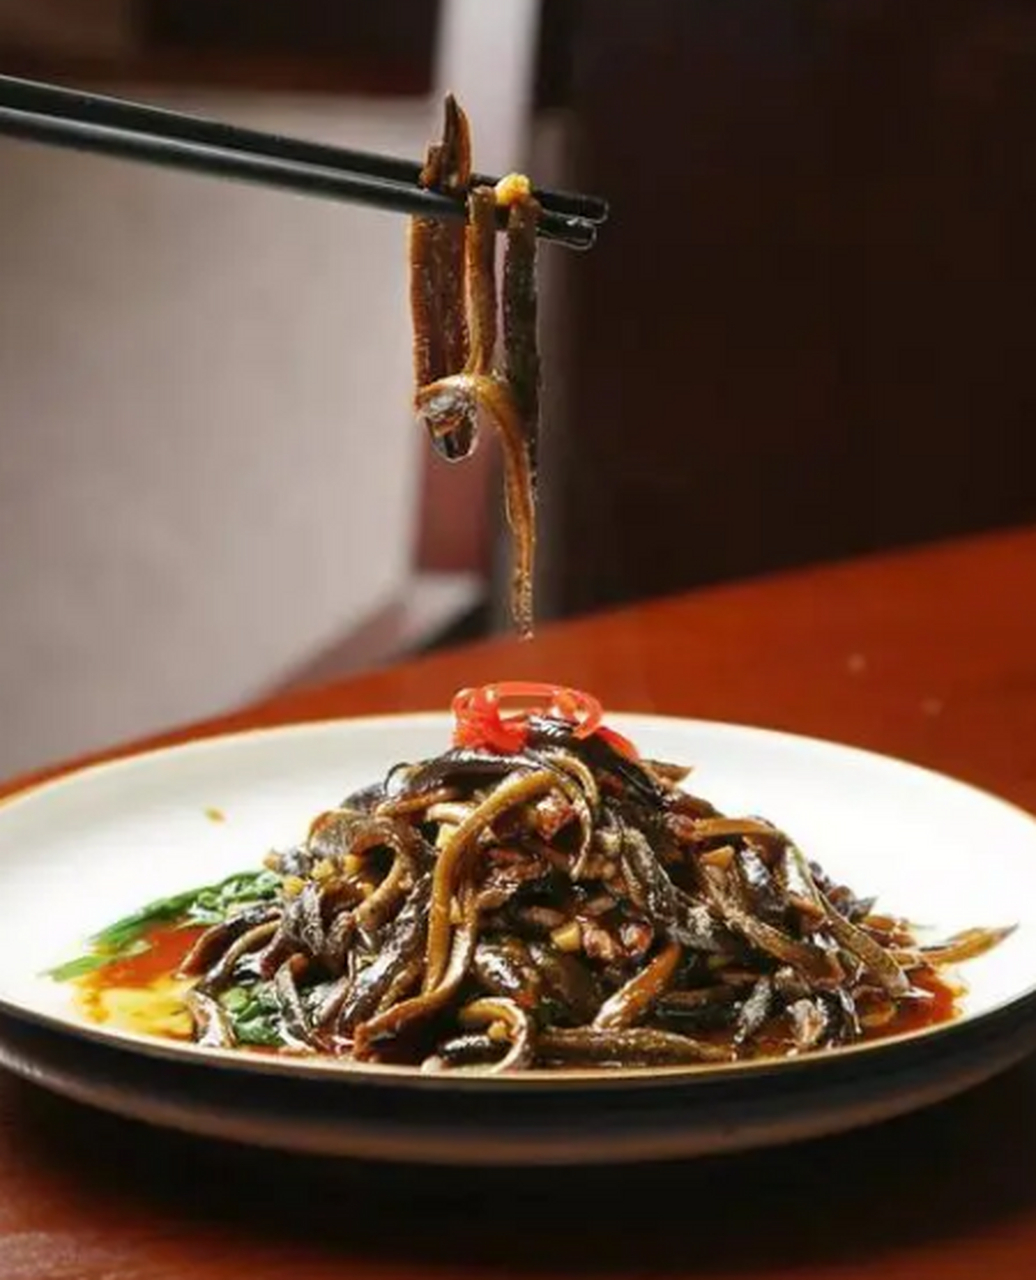 中国国宴超级好吃的经典名菜 软兜鳝鱼 软兜长鱼又称软兜鳝鱼,是